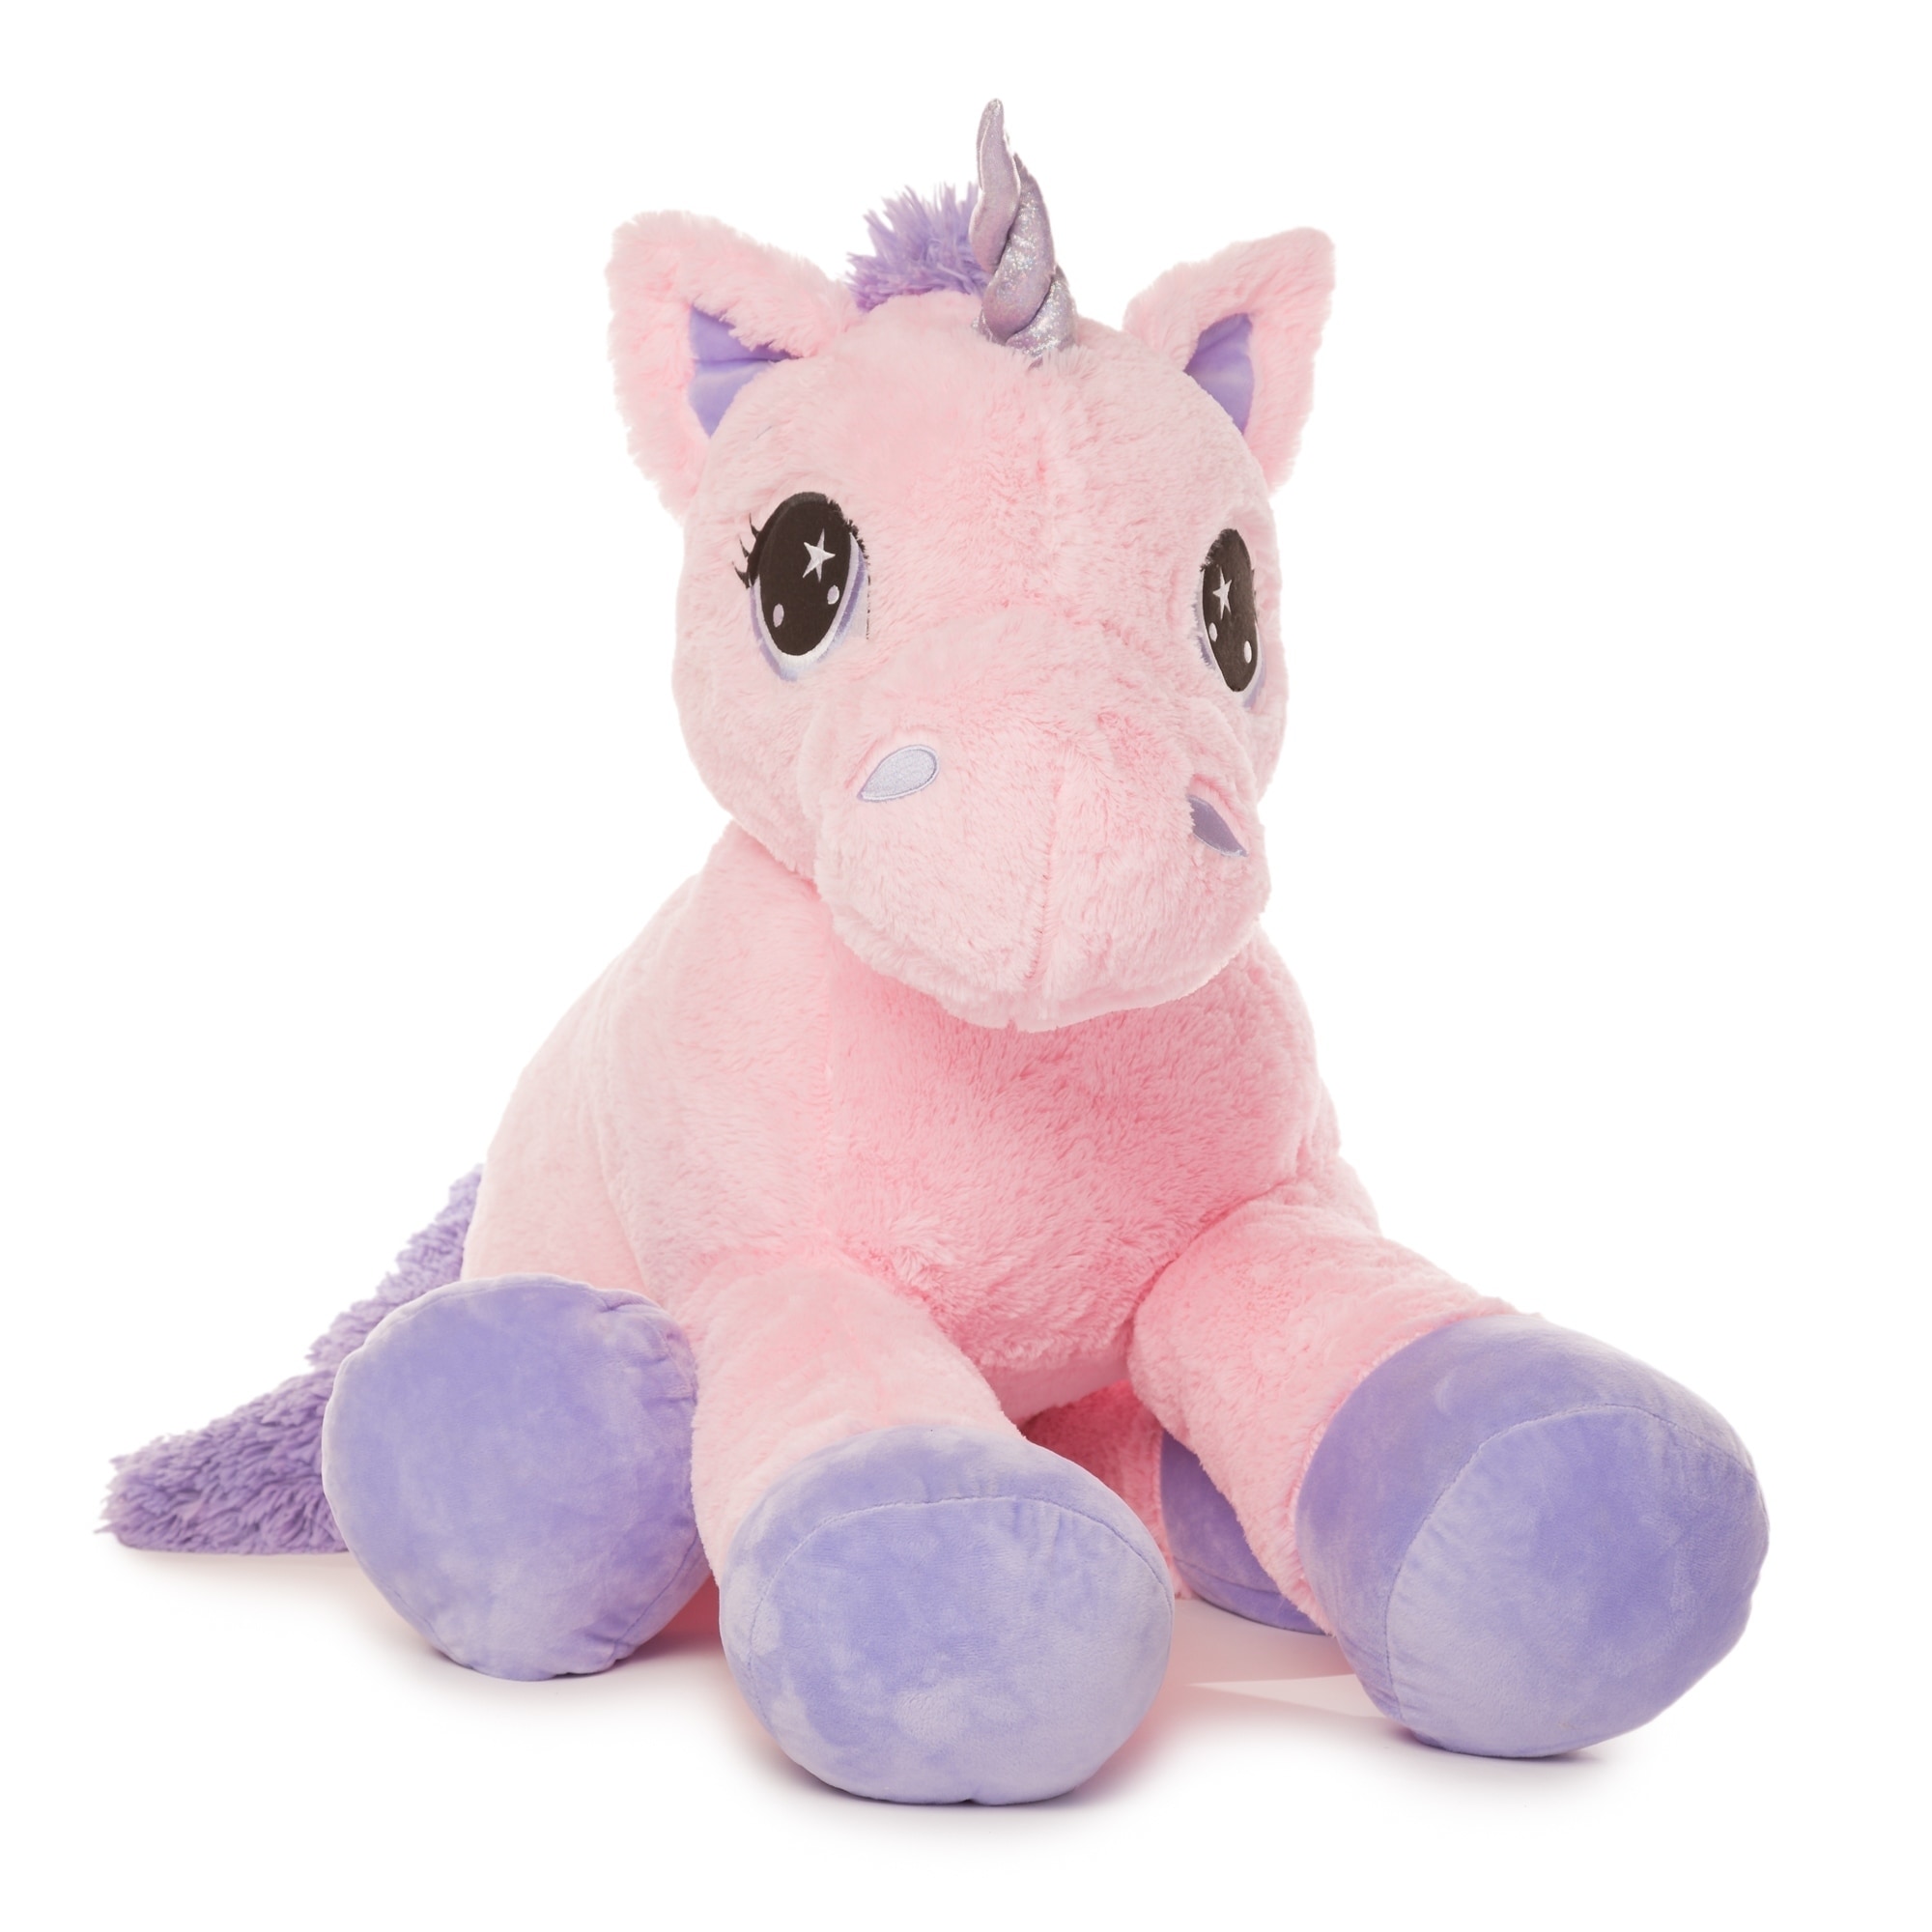 5 foot stuffed unicorn